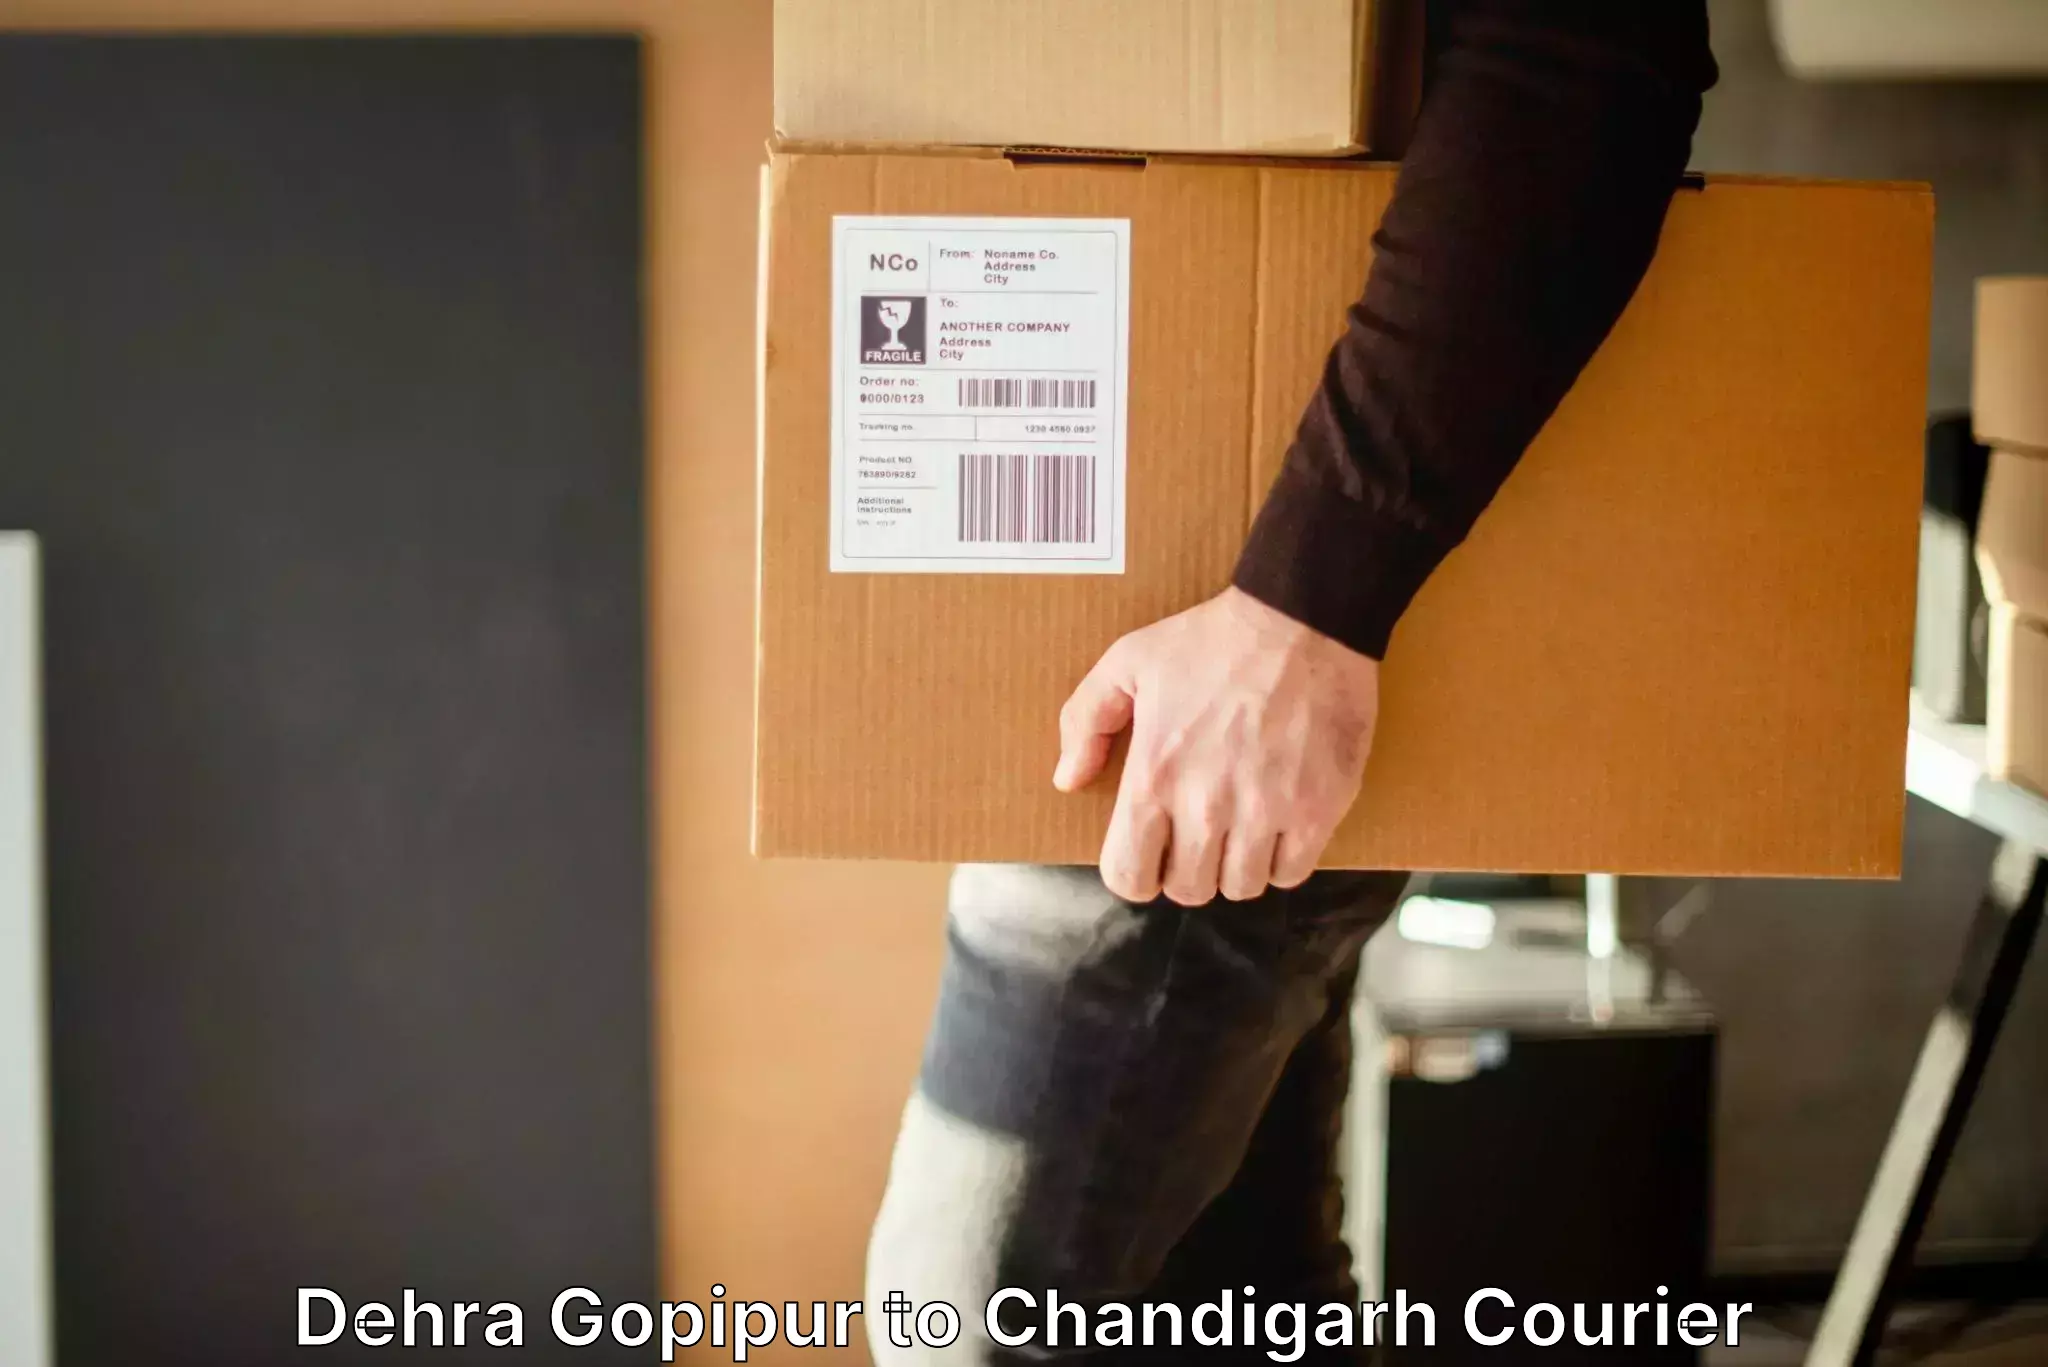 Door-to-door baggage service Dehra Gopipur to Panjab University Chandigarh